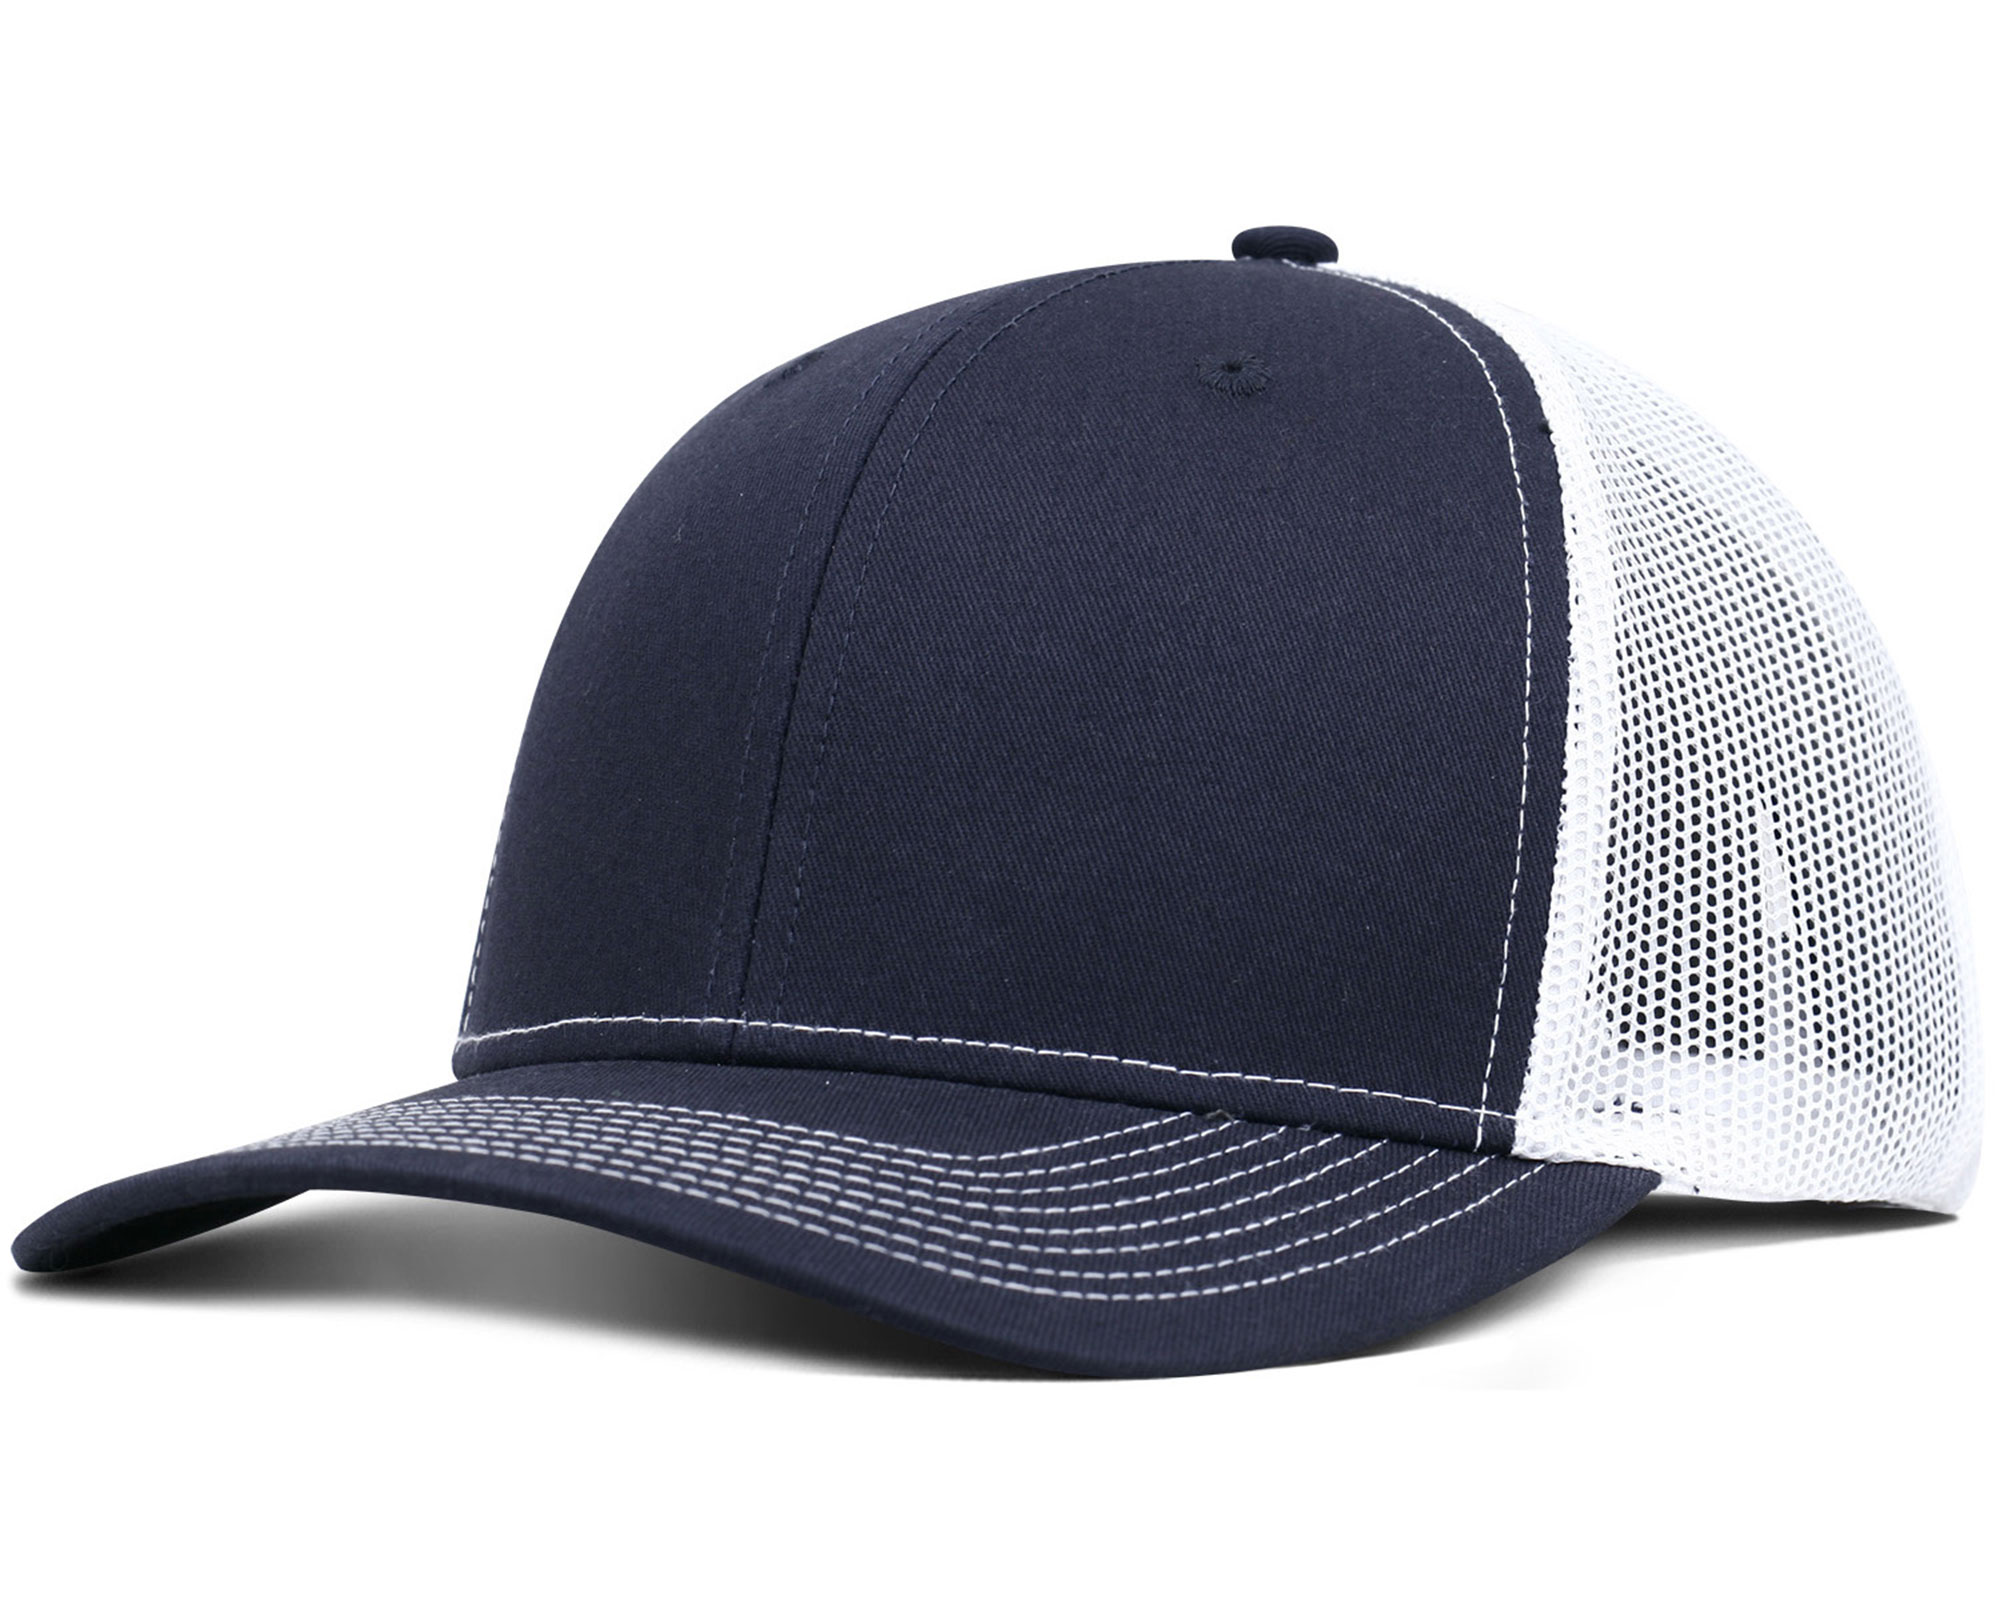 Fahrenheit® F210 Pro Style Trucker Hat